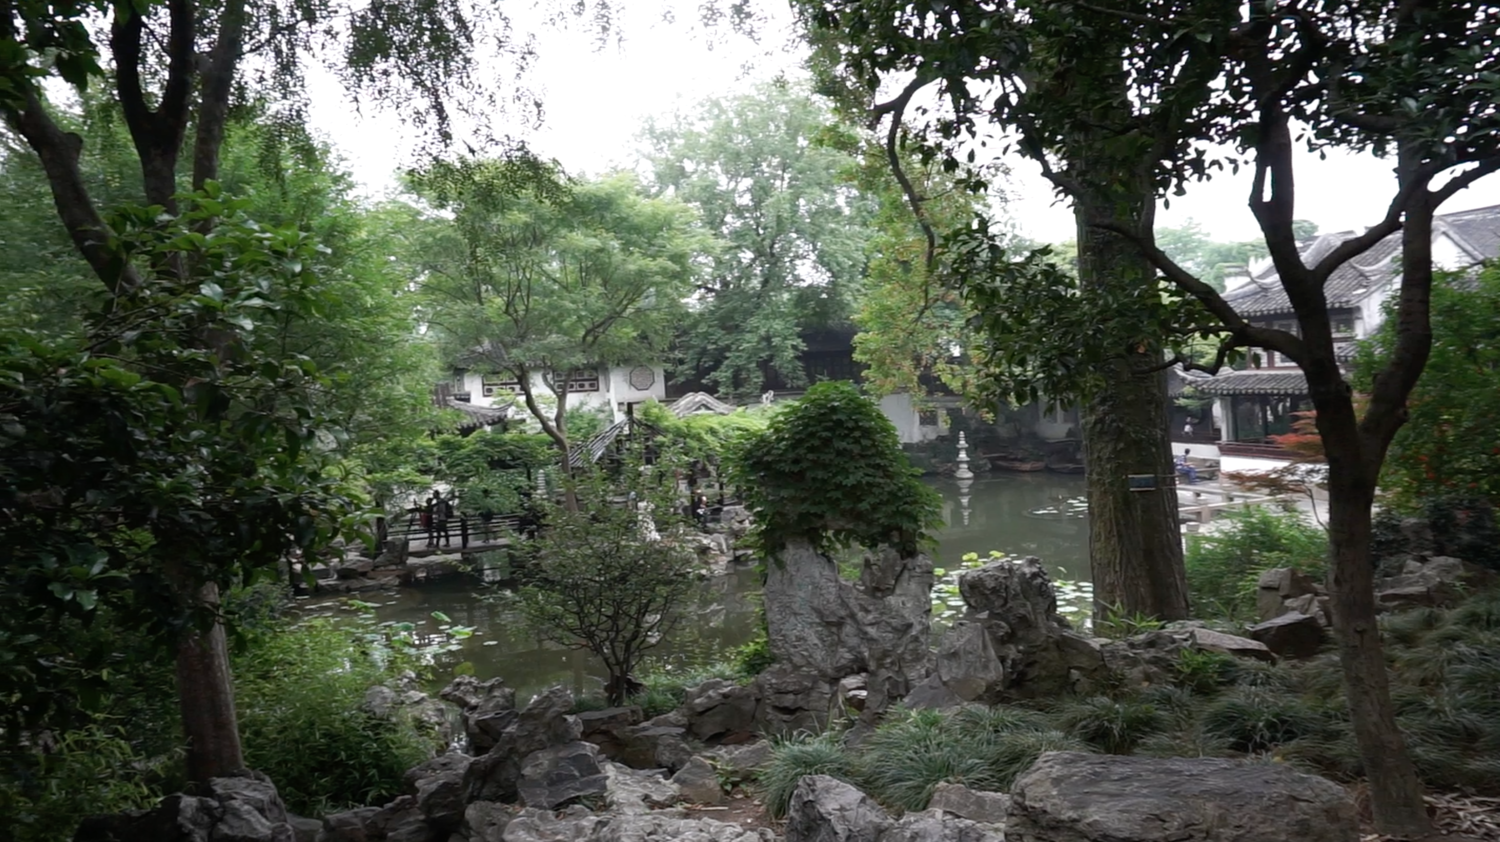 Feng Shui Gardens I with Liu Ming - Jan 31, 2015